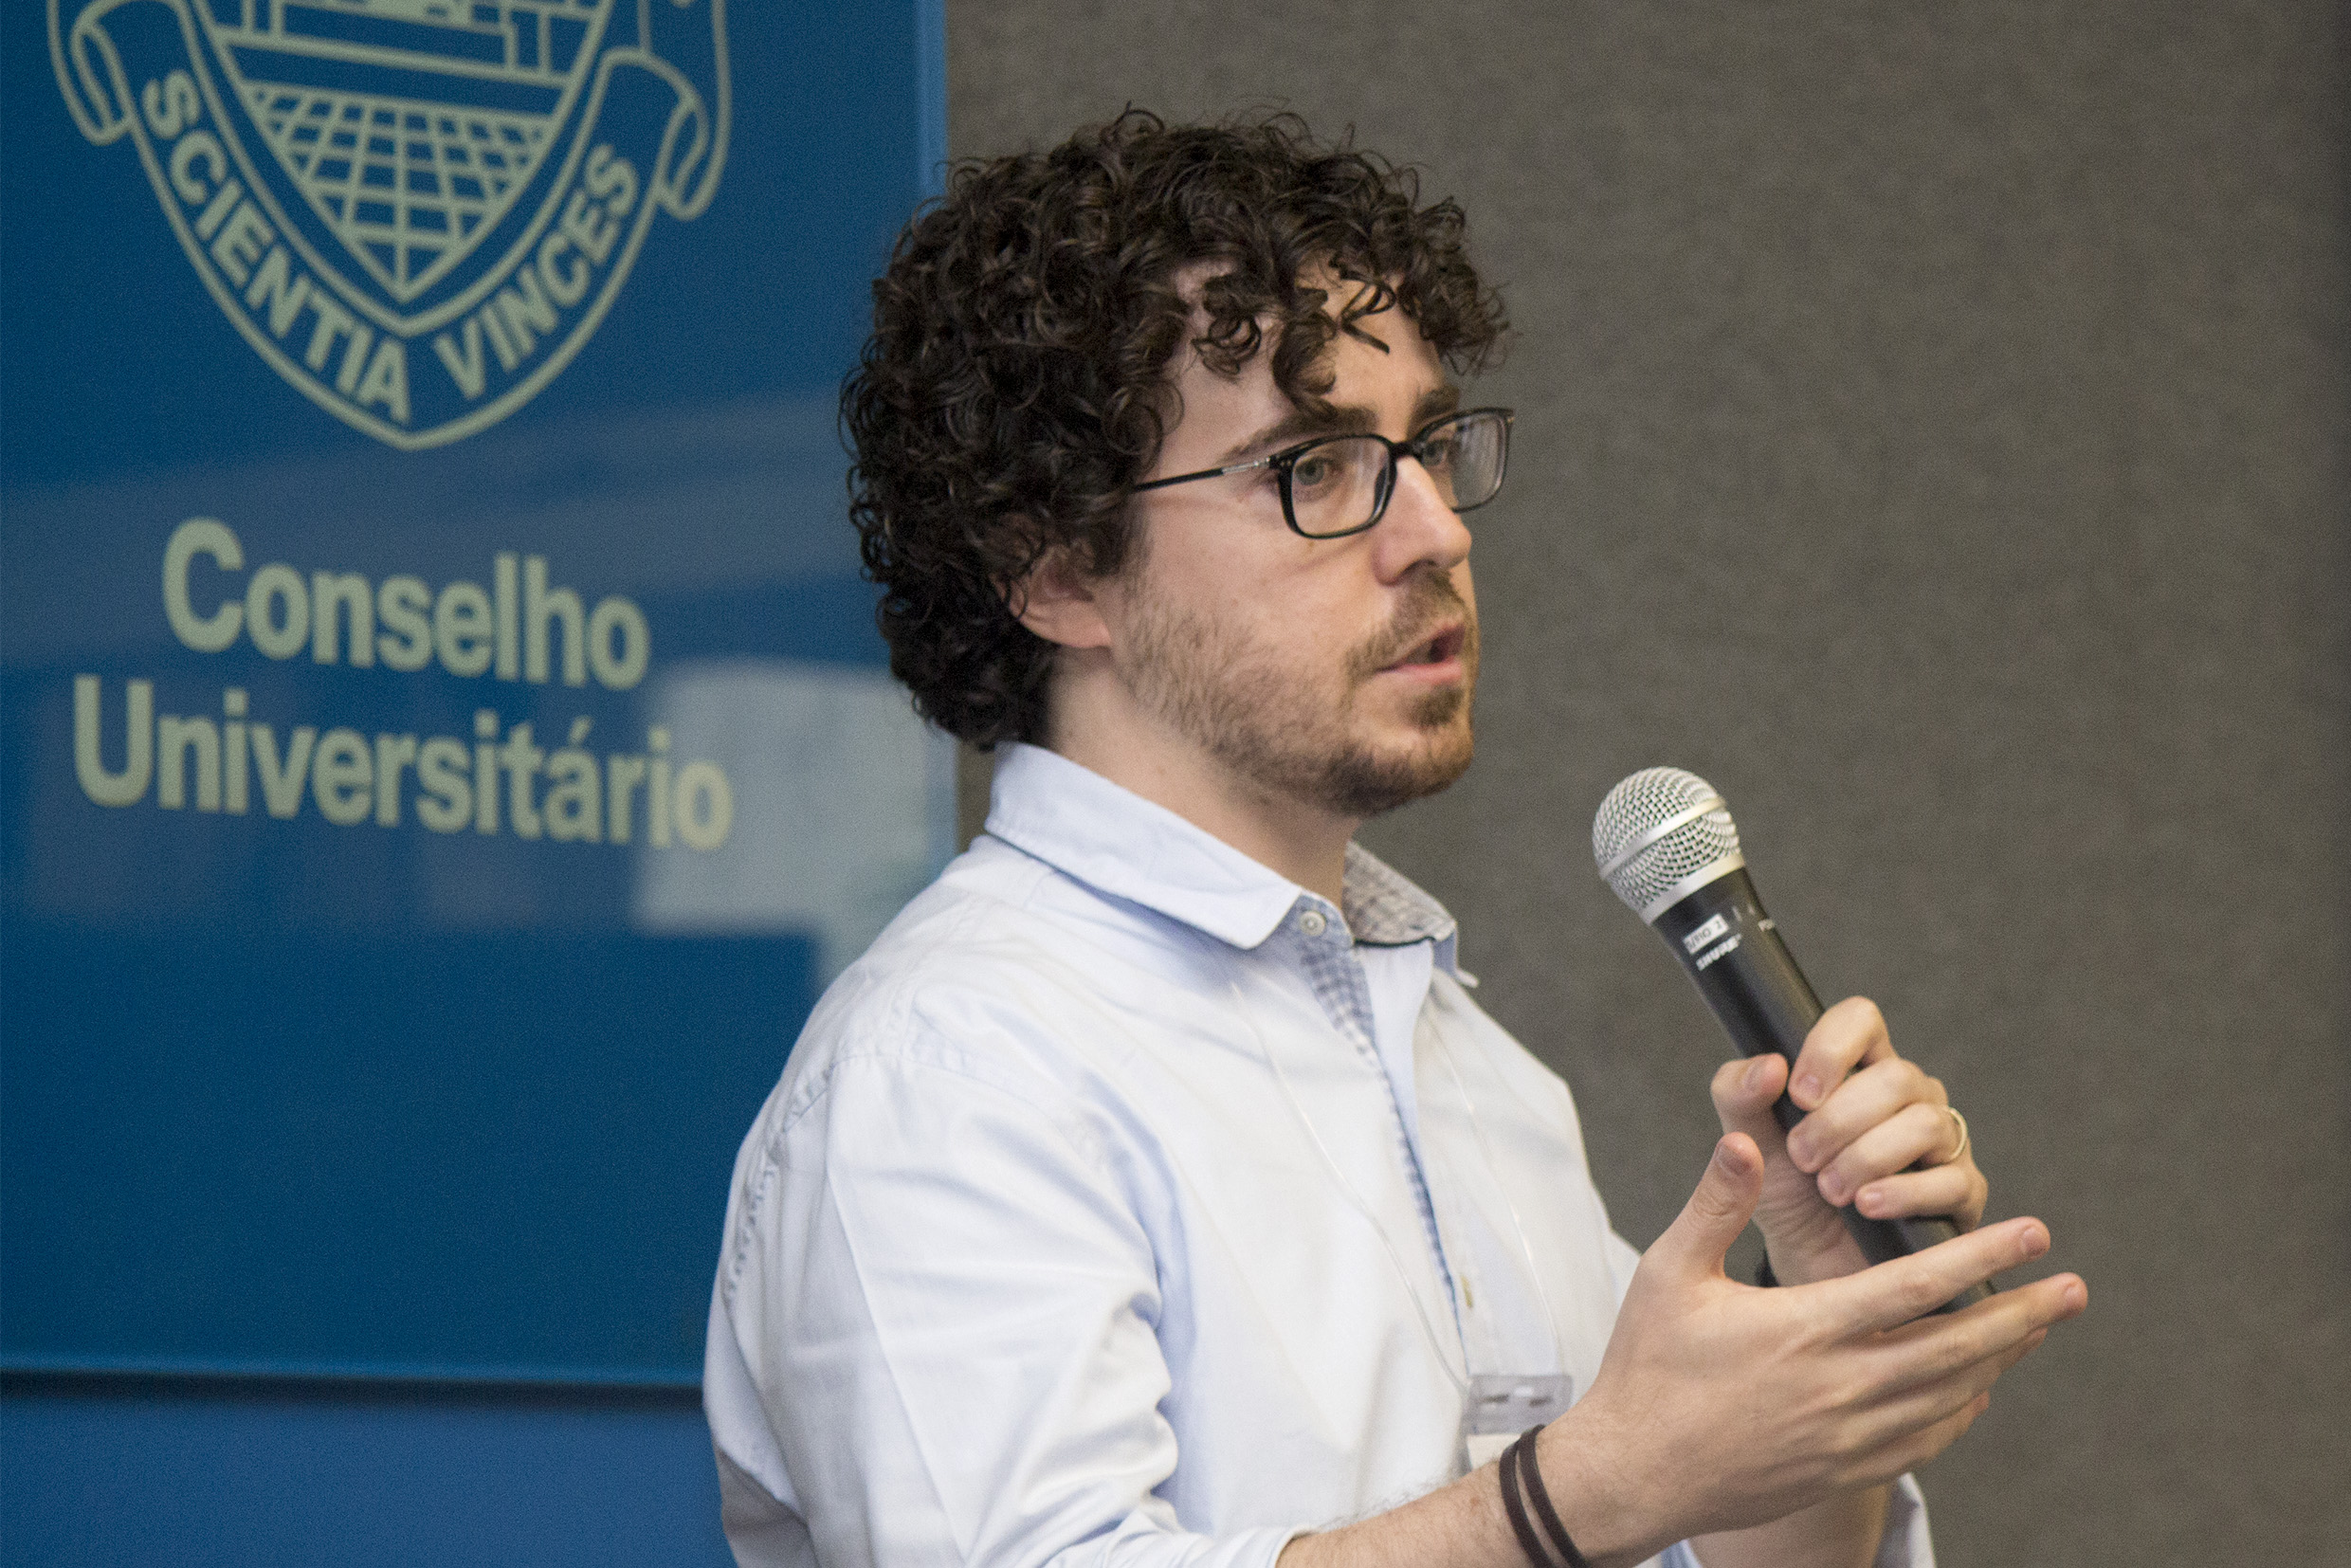 André Cravo Mascioli's presentation - April 21, 2015